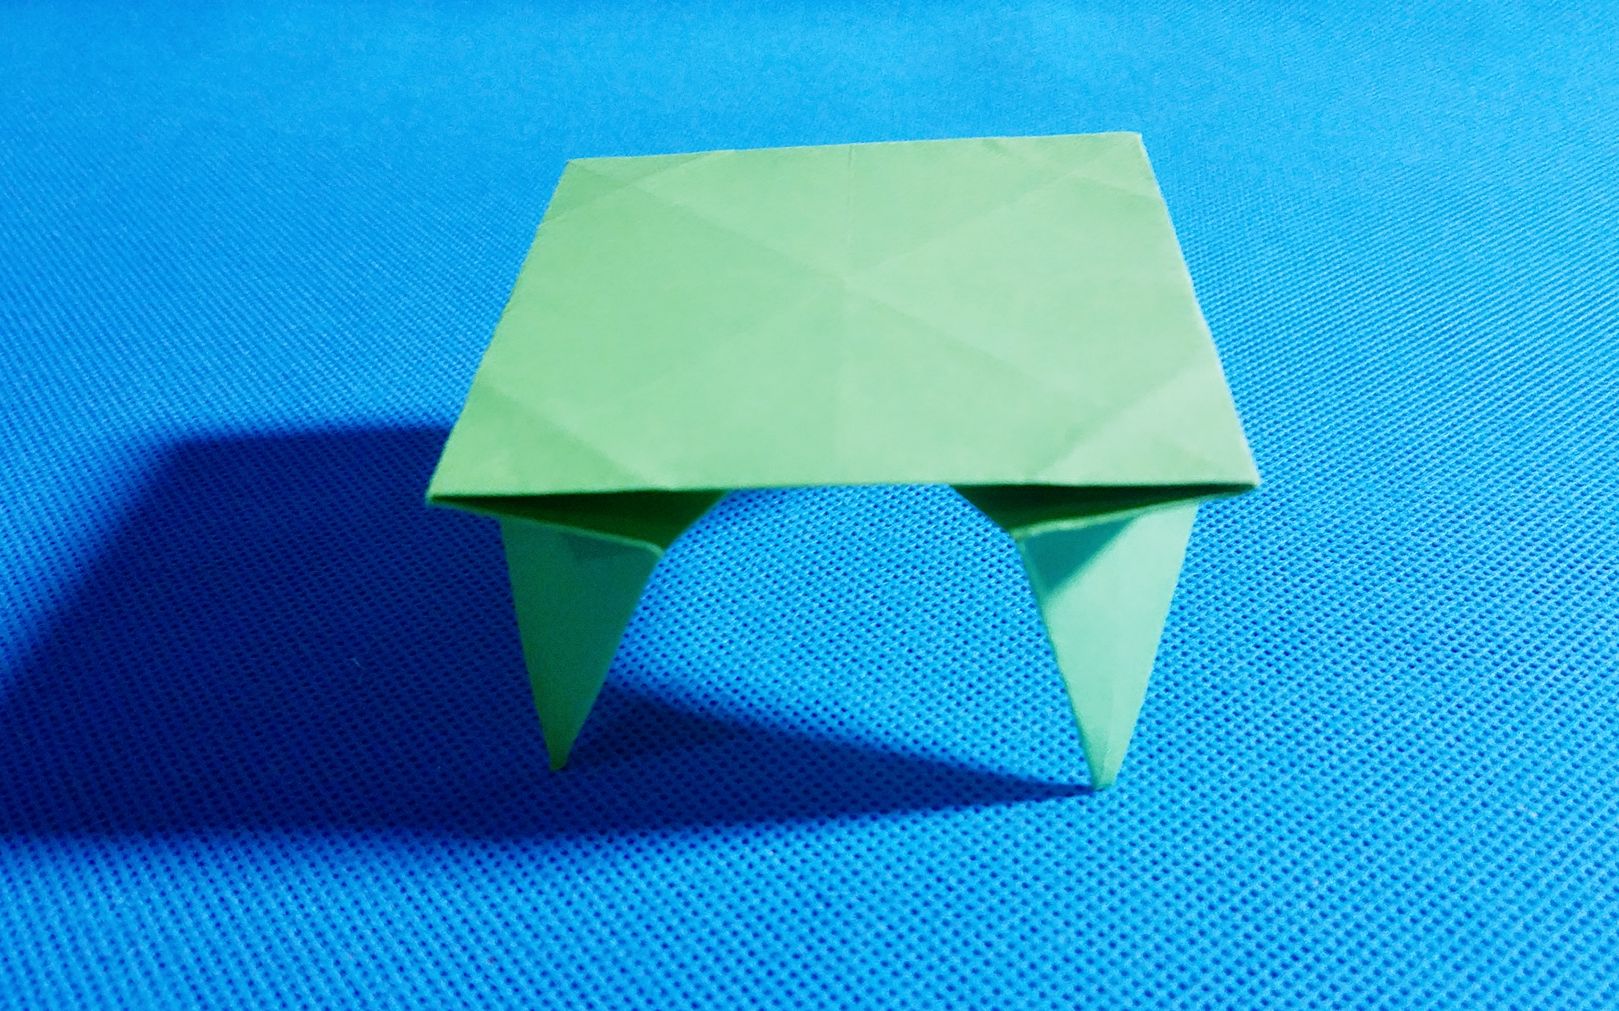 折纸教程 折纸王子 小 桌子折纸教程,讲解详细一看就会